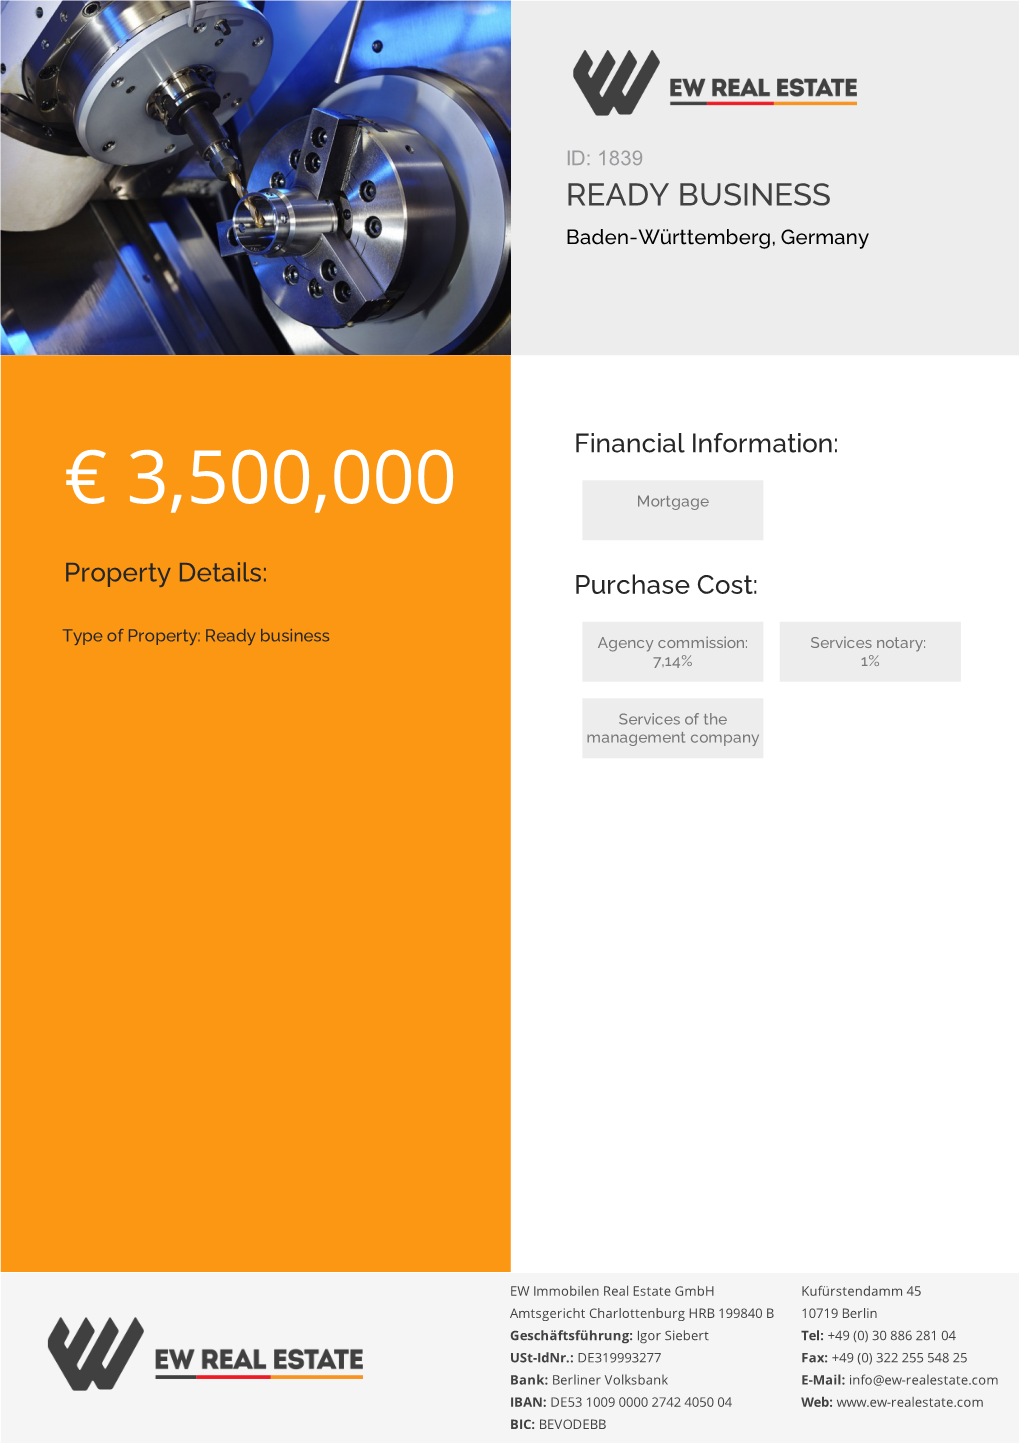 € 3,500,000 Mortgage